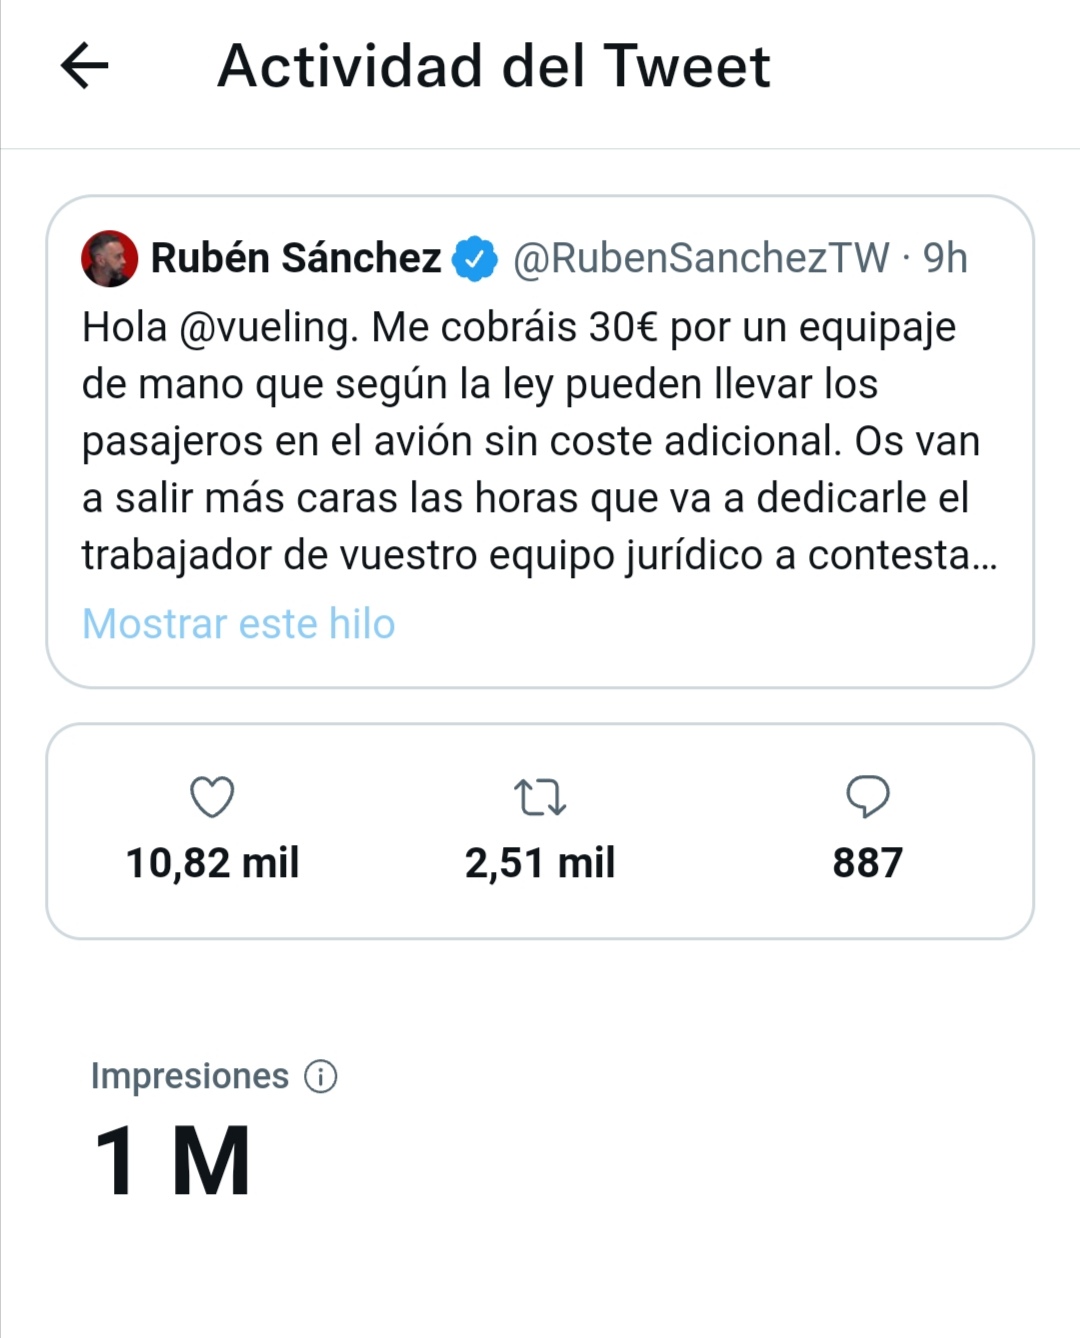 Rubén Sánchez on Twitter: "Hola @vueling. Me 30€ por un equipaje de mano que según la ley pueden llevar los pasajeros en el avión sin coste Os van